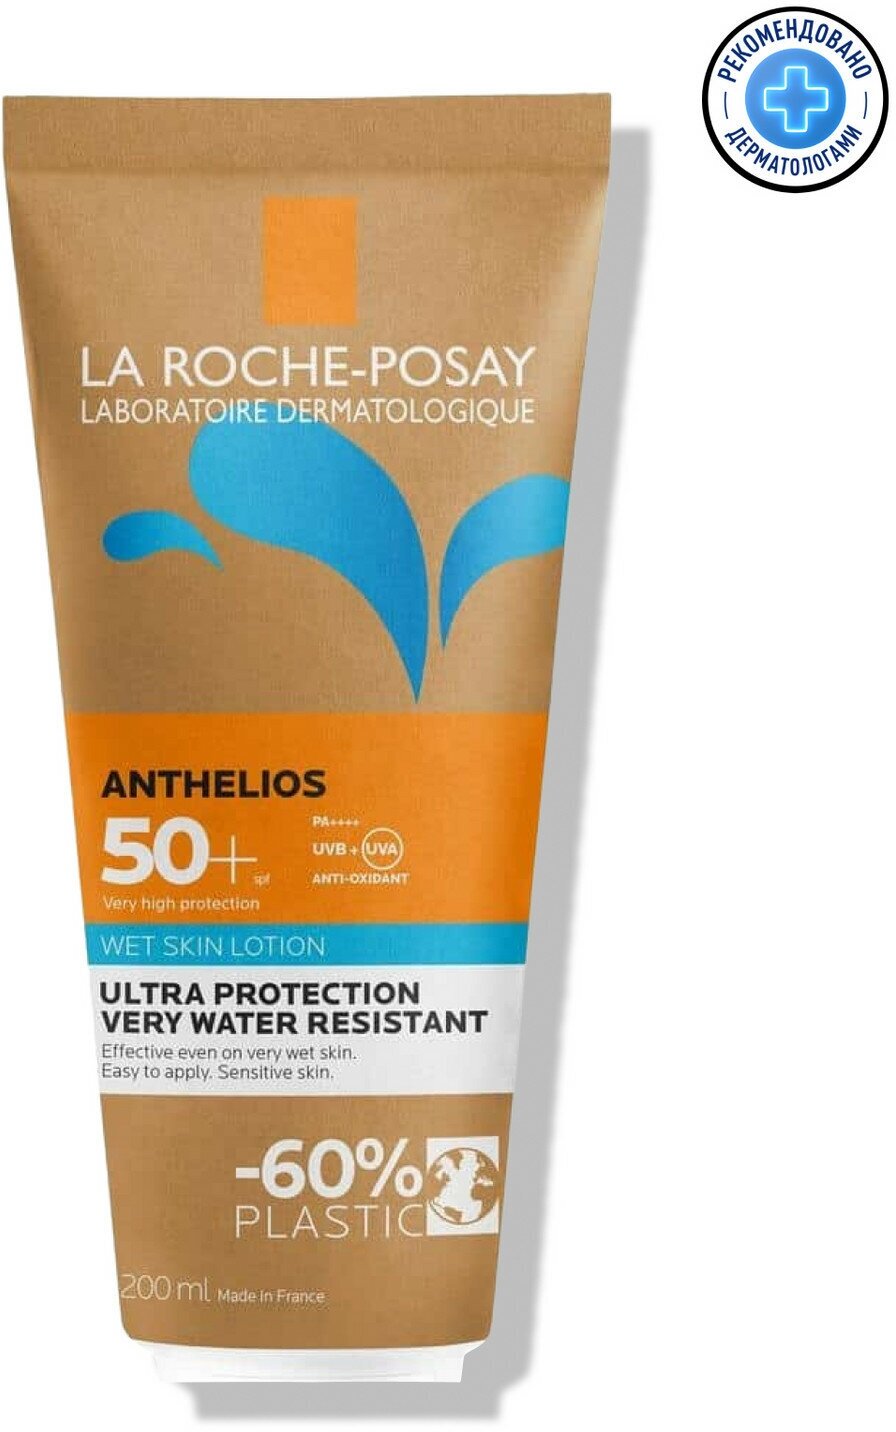 LA ROCHE POSAY Солнцезащитный гель-крем с технологией нанесения на влажную кожу SPF 50+ в эко-упаковке, 200 мл